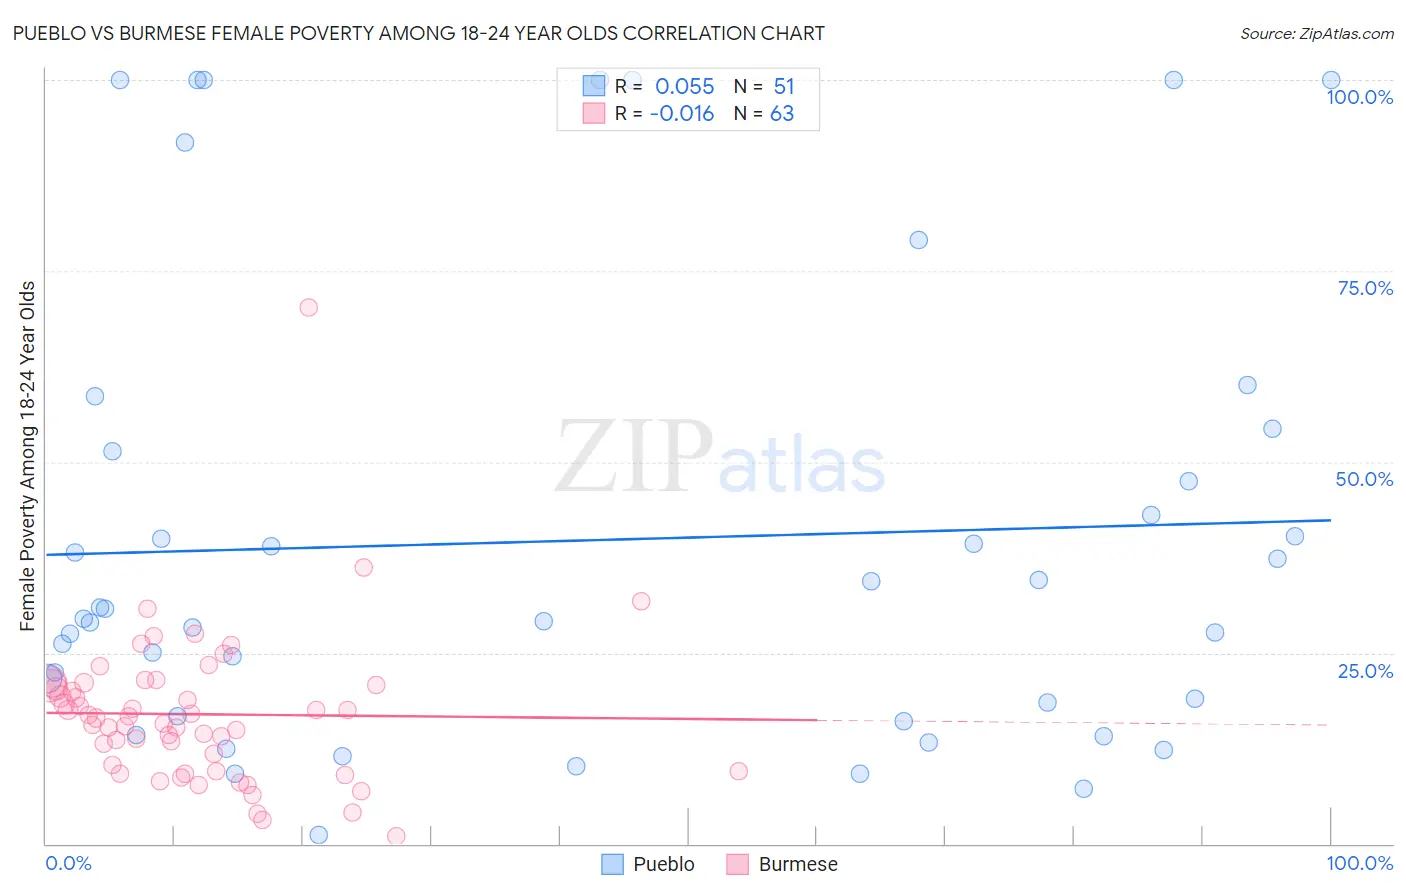 Pueblo vs Burmese Female Poverty Among 18-24 Year Olds